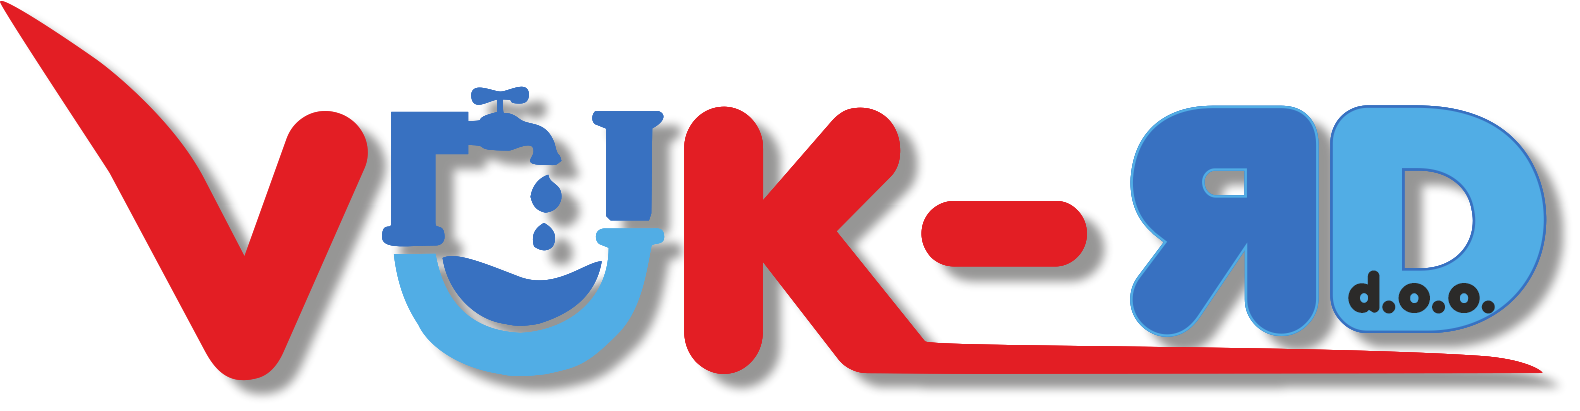 VUK-RD d.o.o. logo